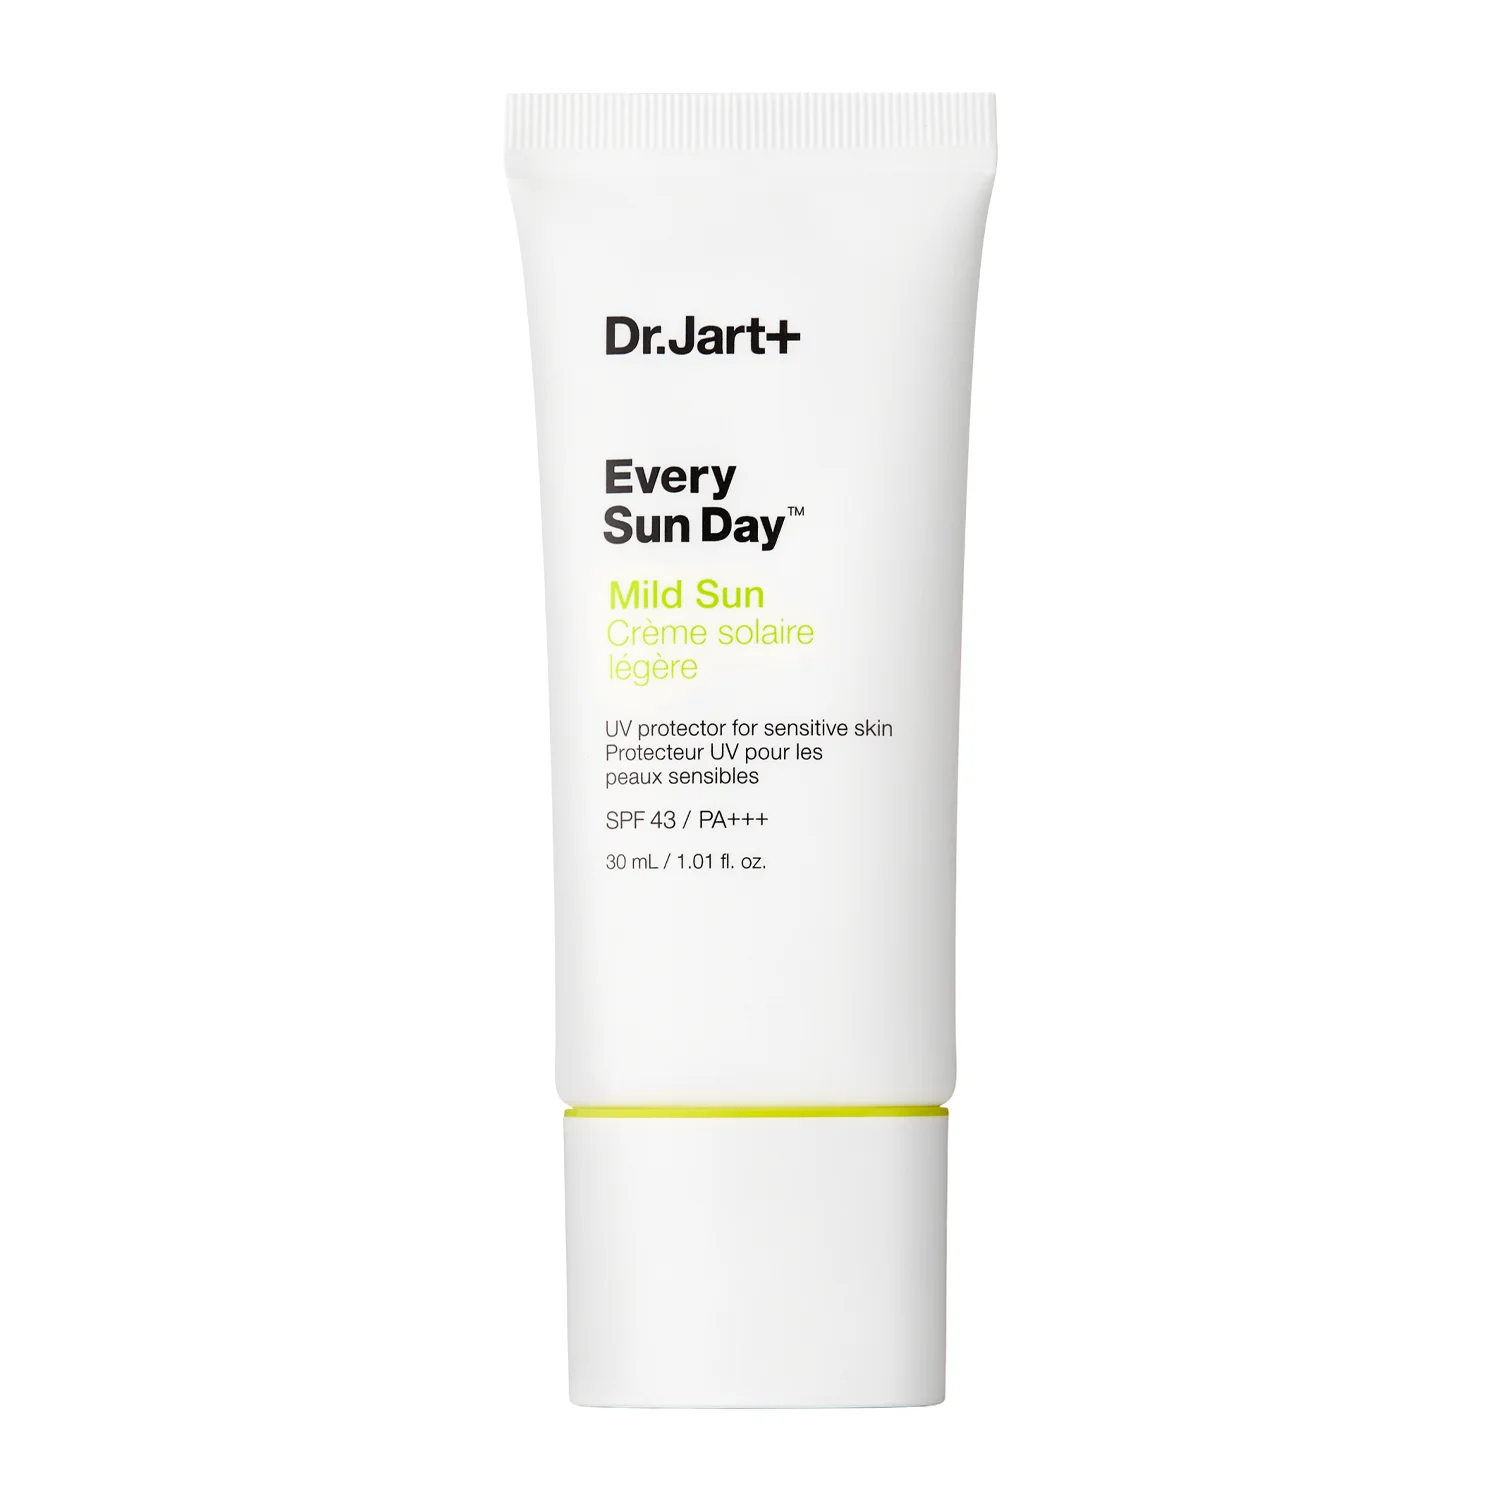  Dr.Jart+ - Every Sun Day Mild Sun SPF43/PA+++ - 30ml